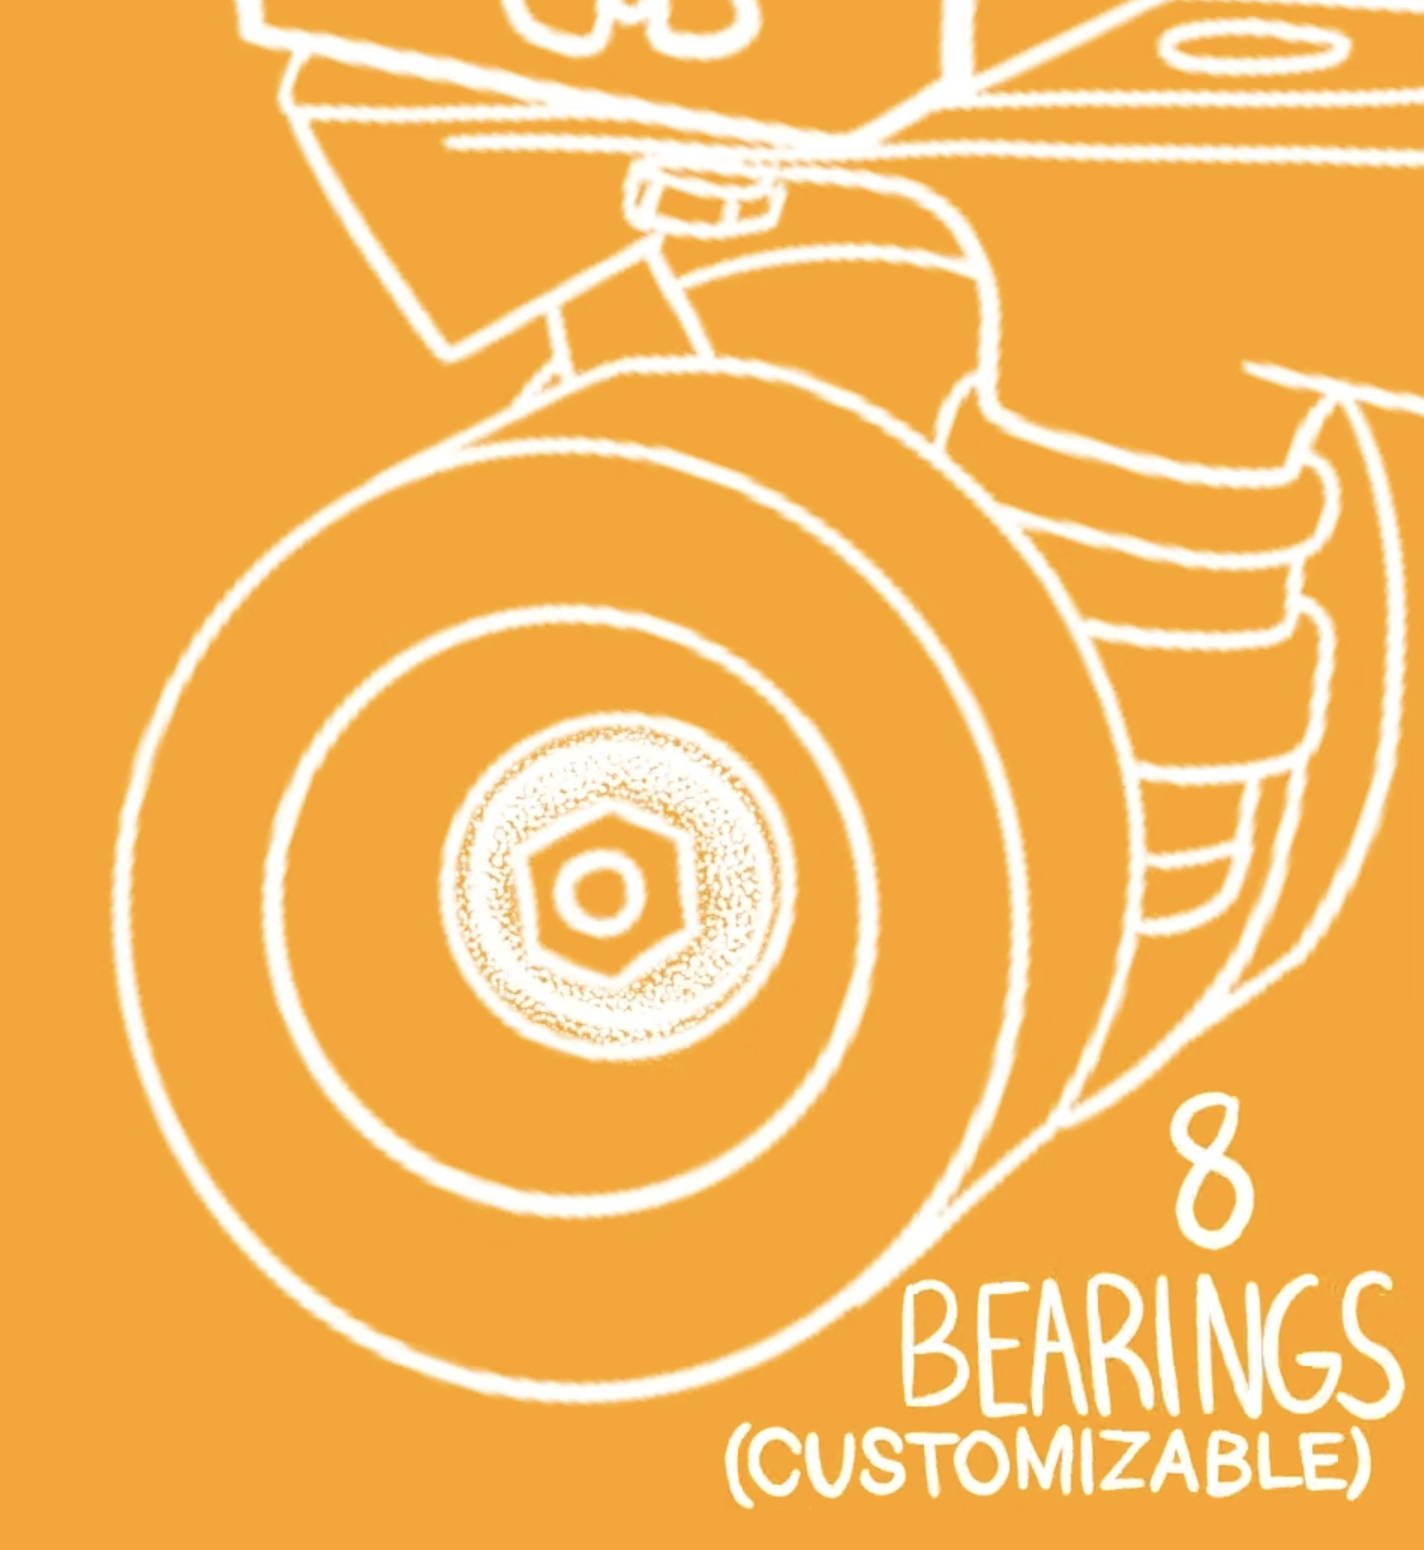 8 bearings